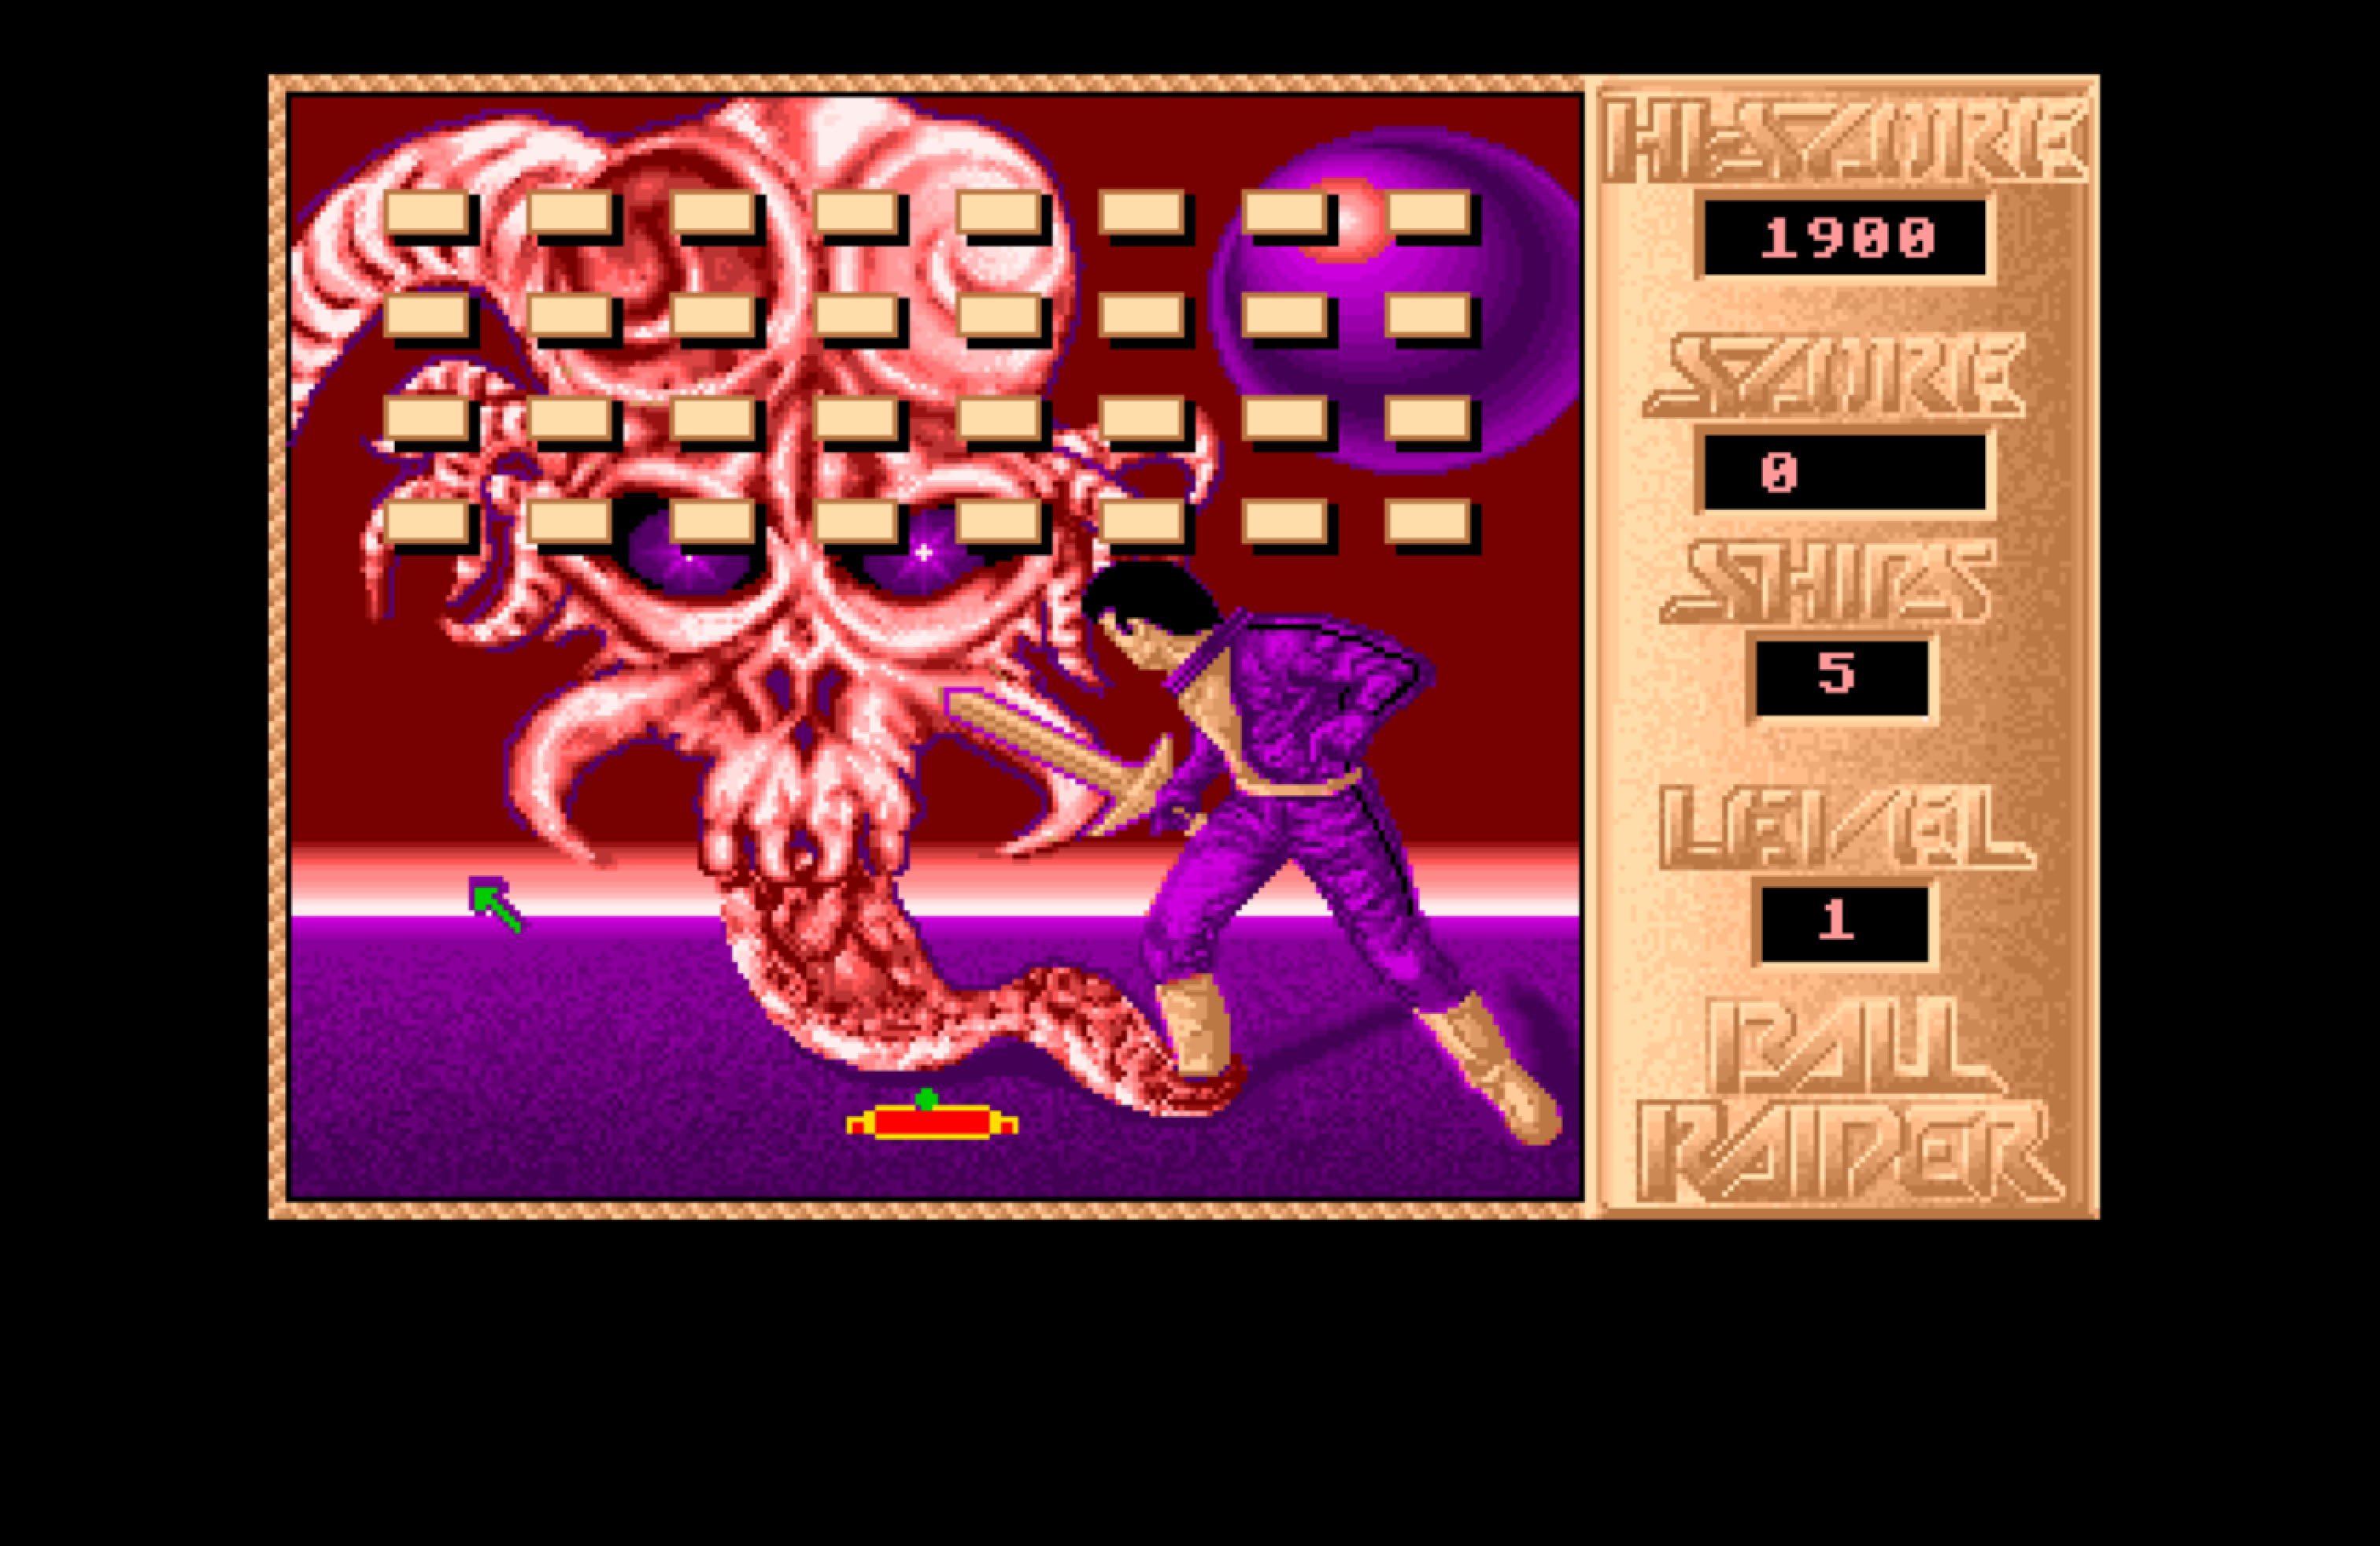 Ball Raider (1987) - Main Gameplay Mode